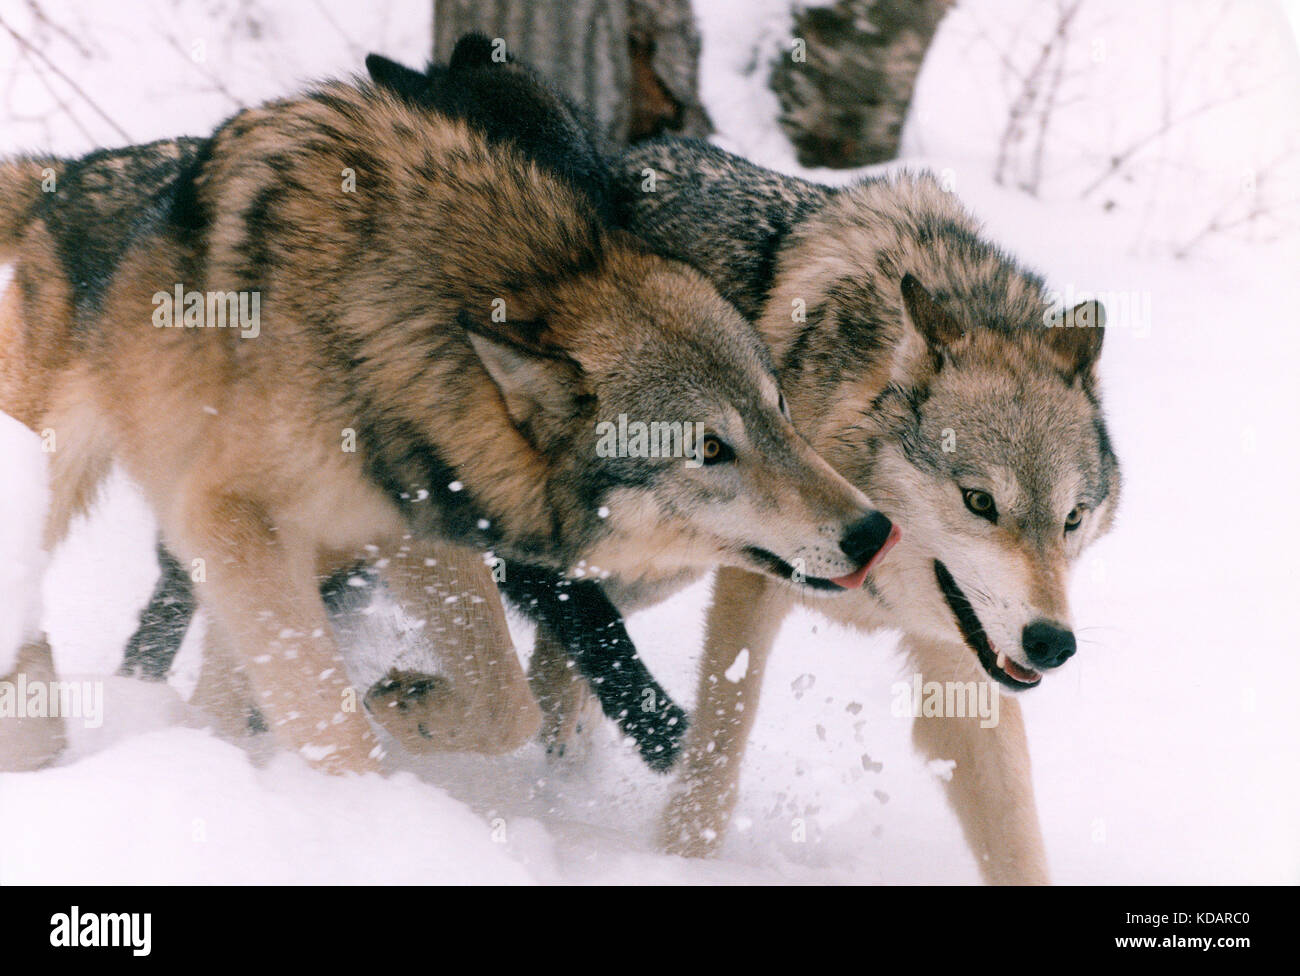 Canadá. La vida silvestre. Lobos Grises en la nieve. Foto de stock